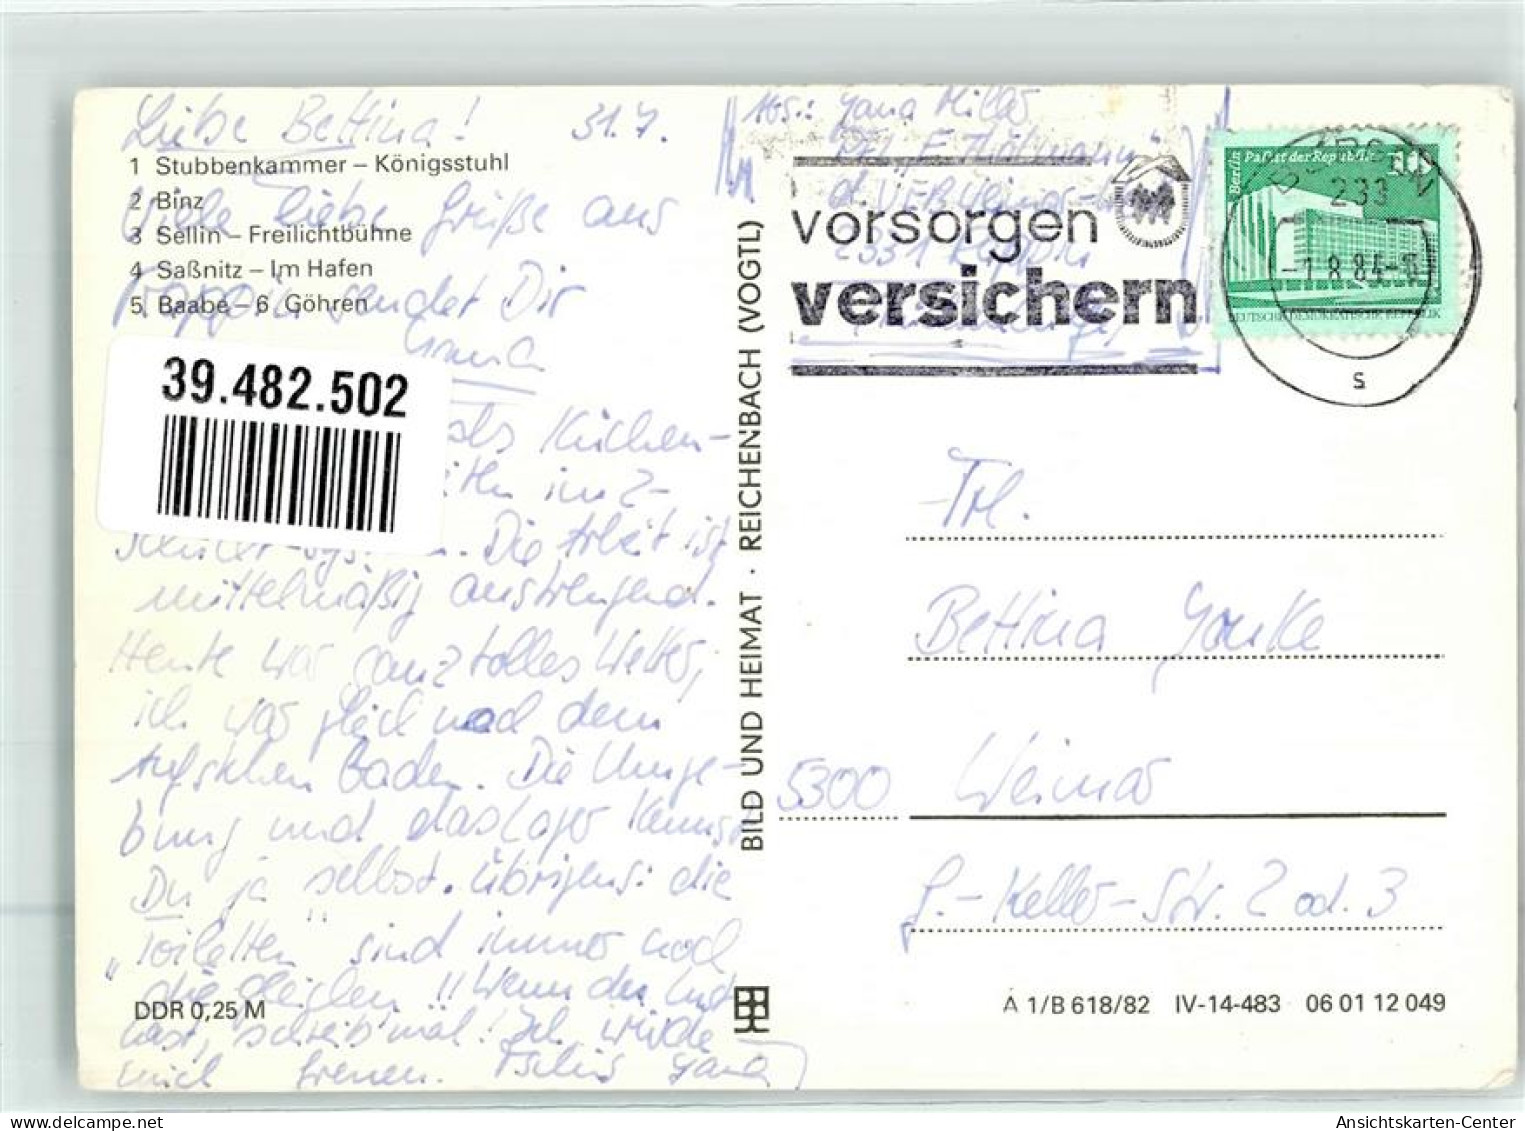 39482502 - Sassnitz - Sassnitz